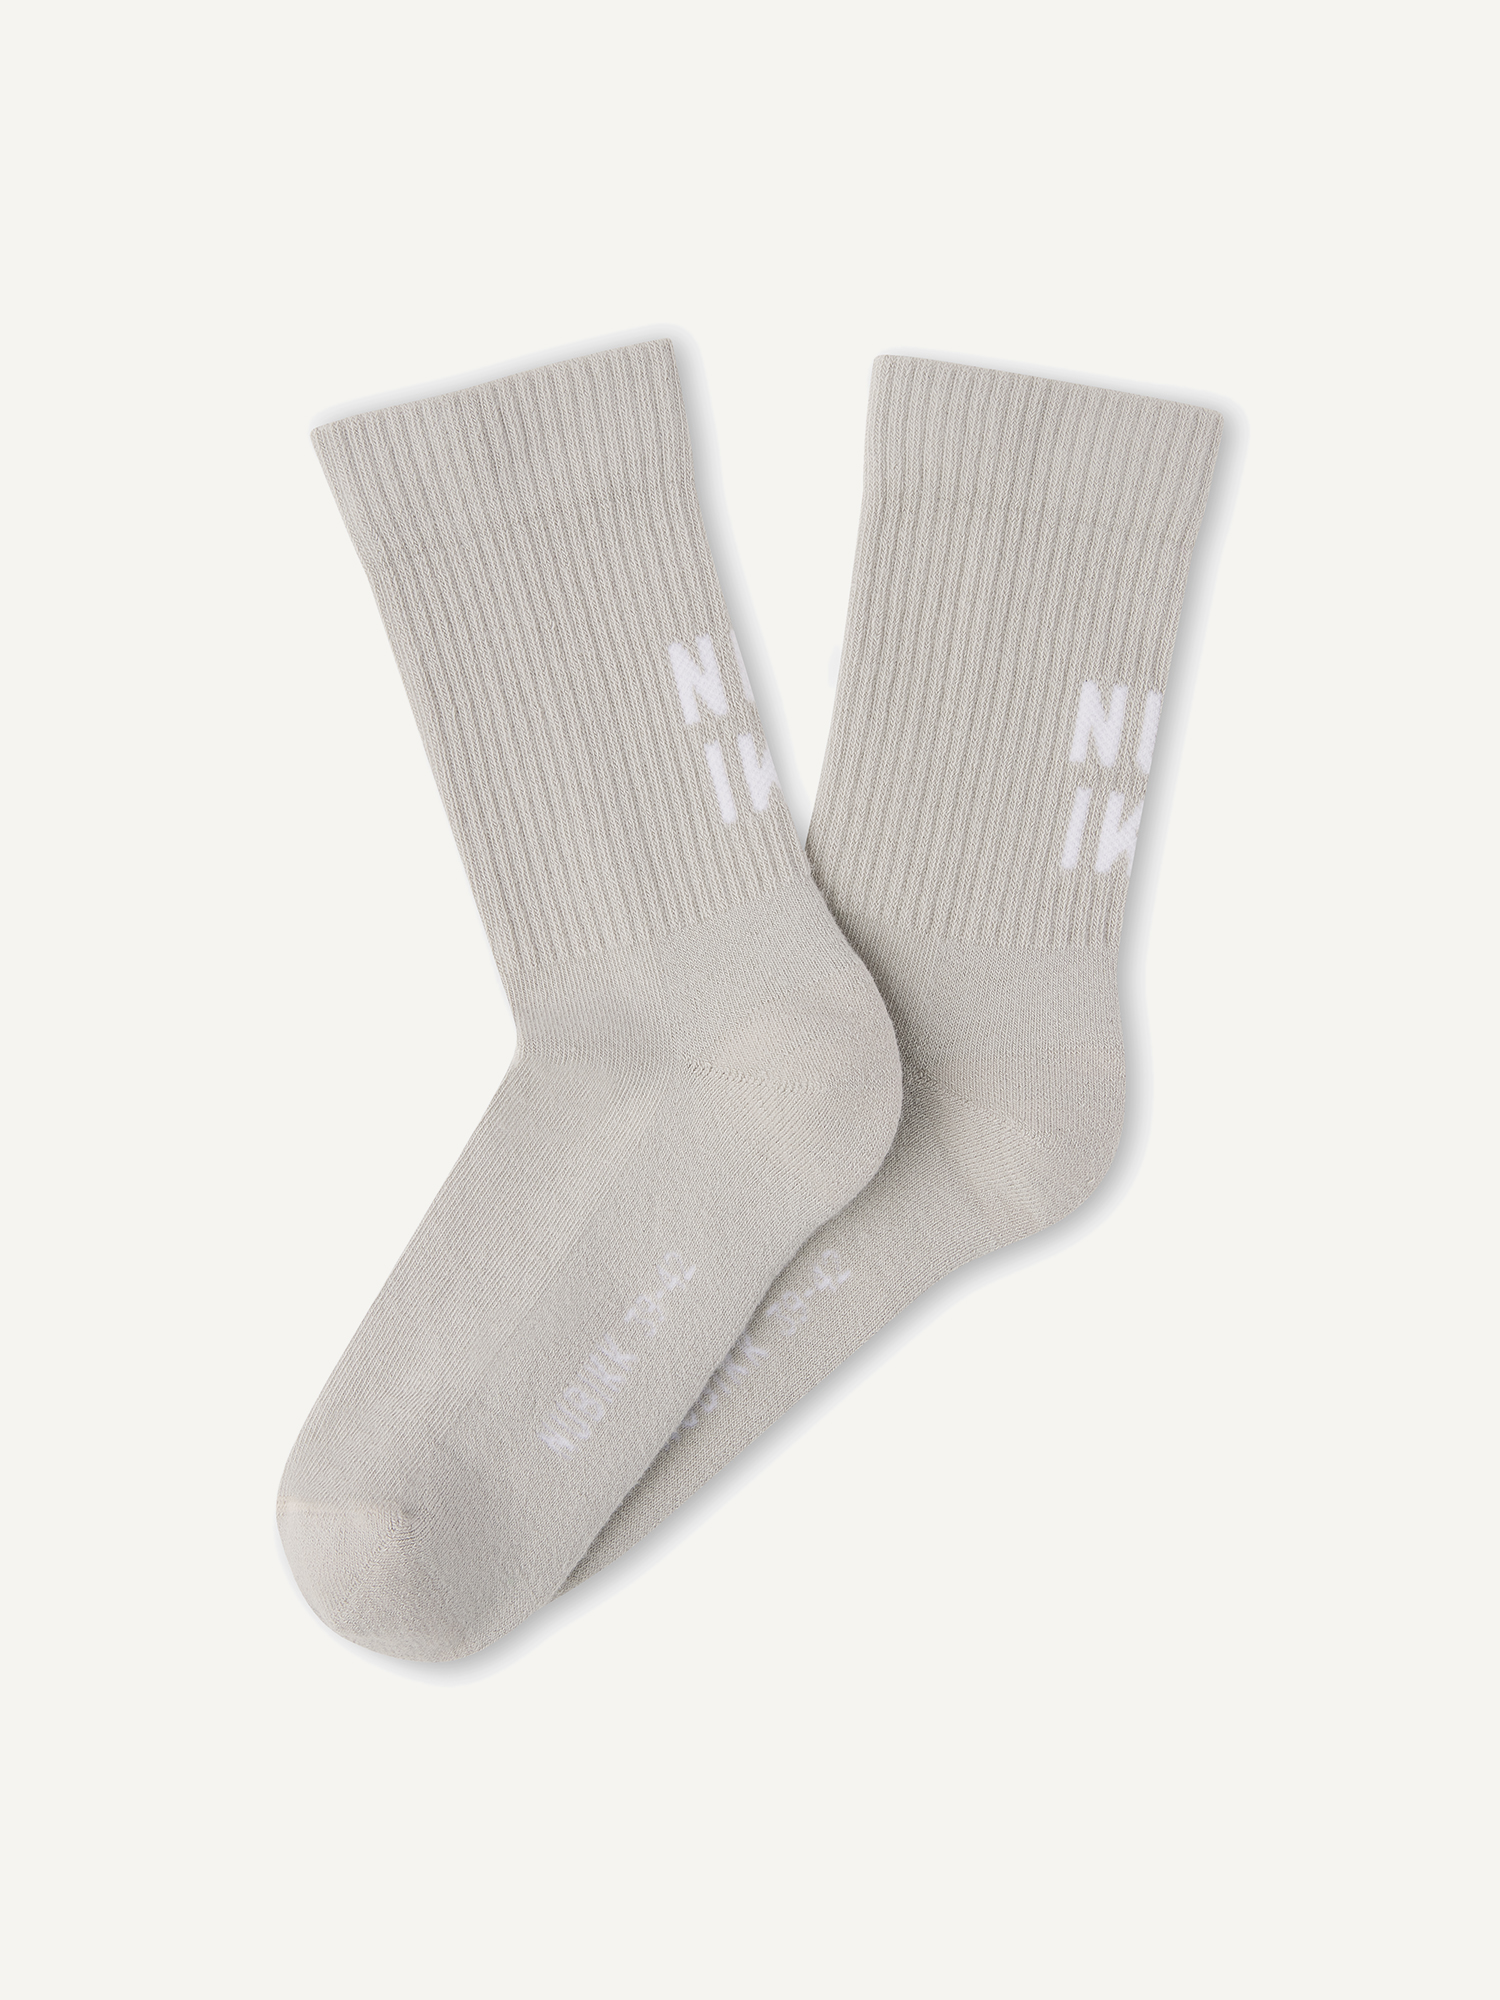 Nova Socks | Grey socks for men